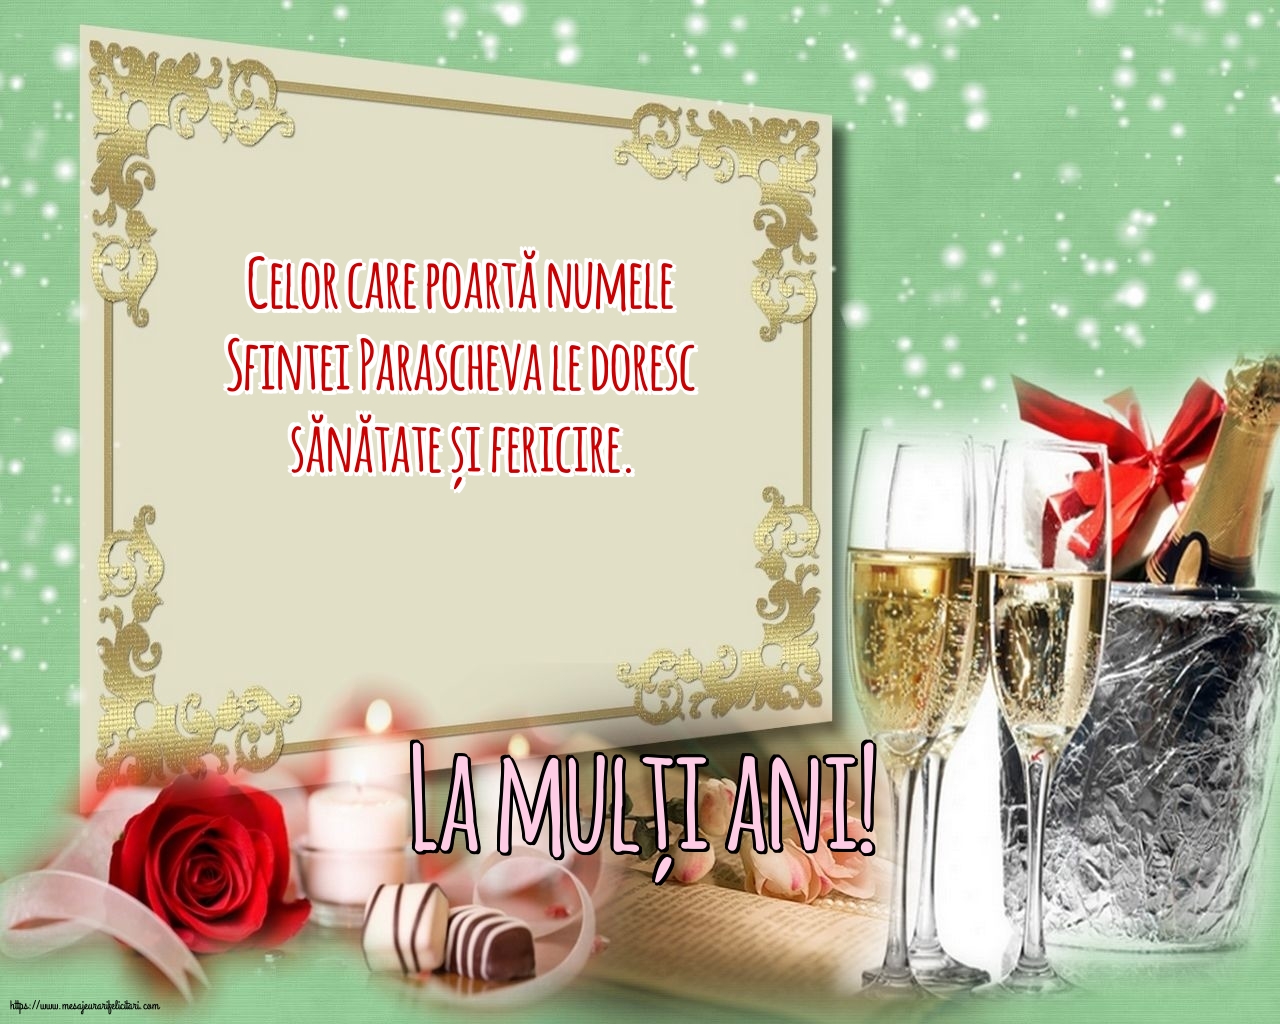 Felicitari de Sfanta Parascheva cu mesaje - La mulți ani!